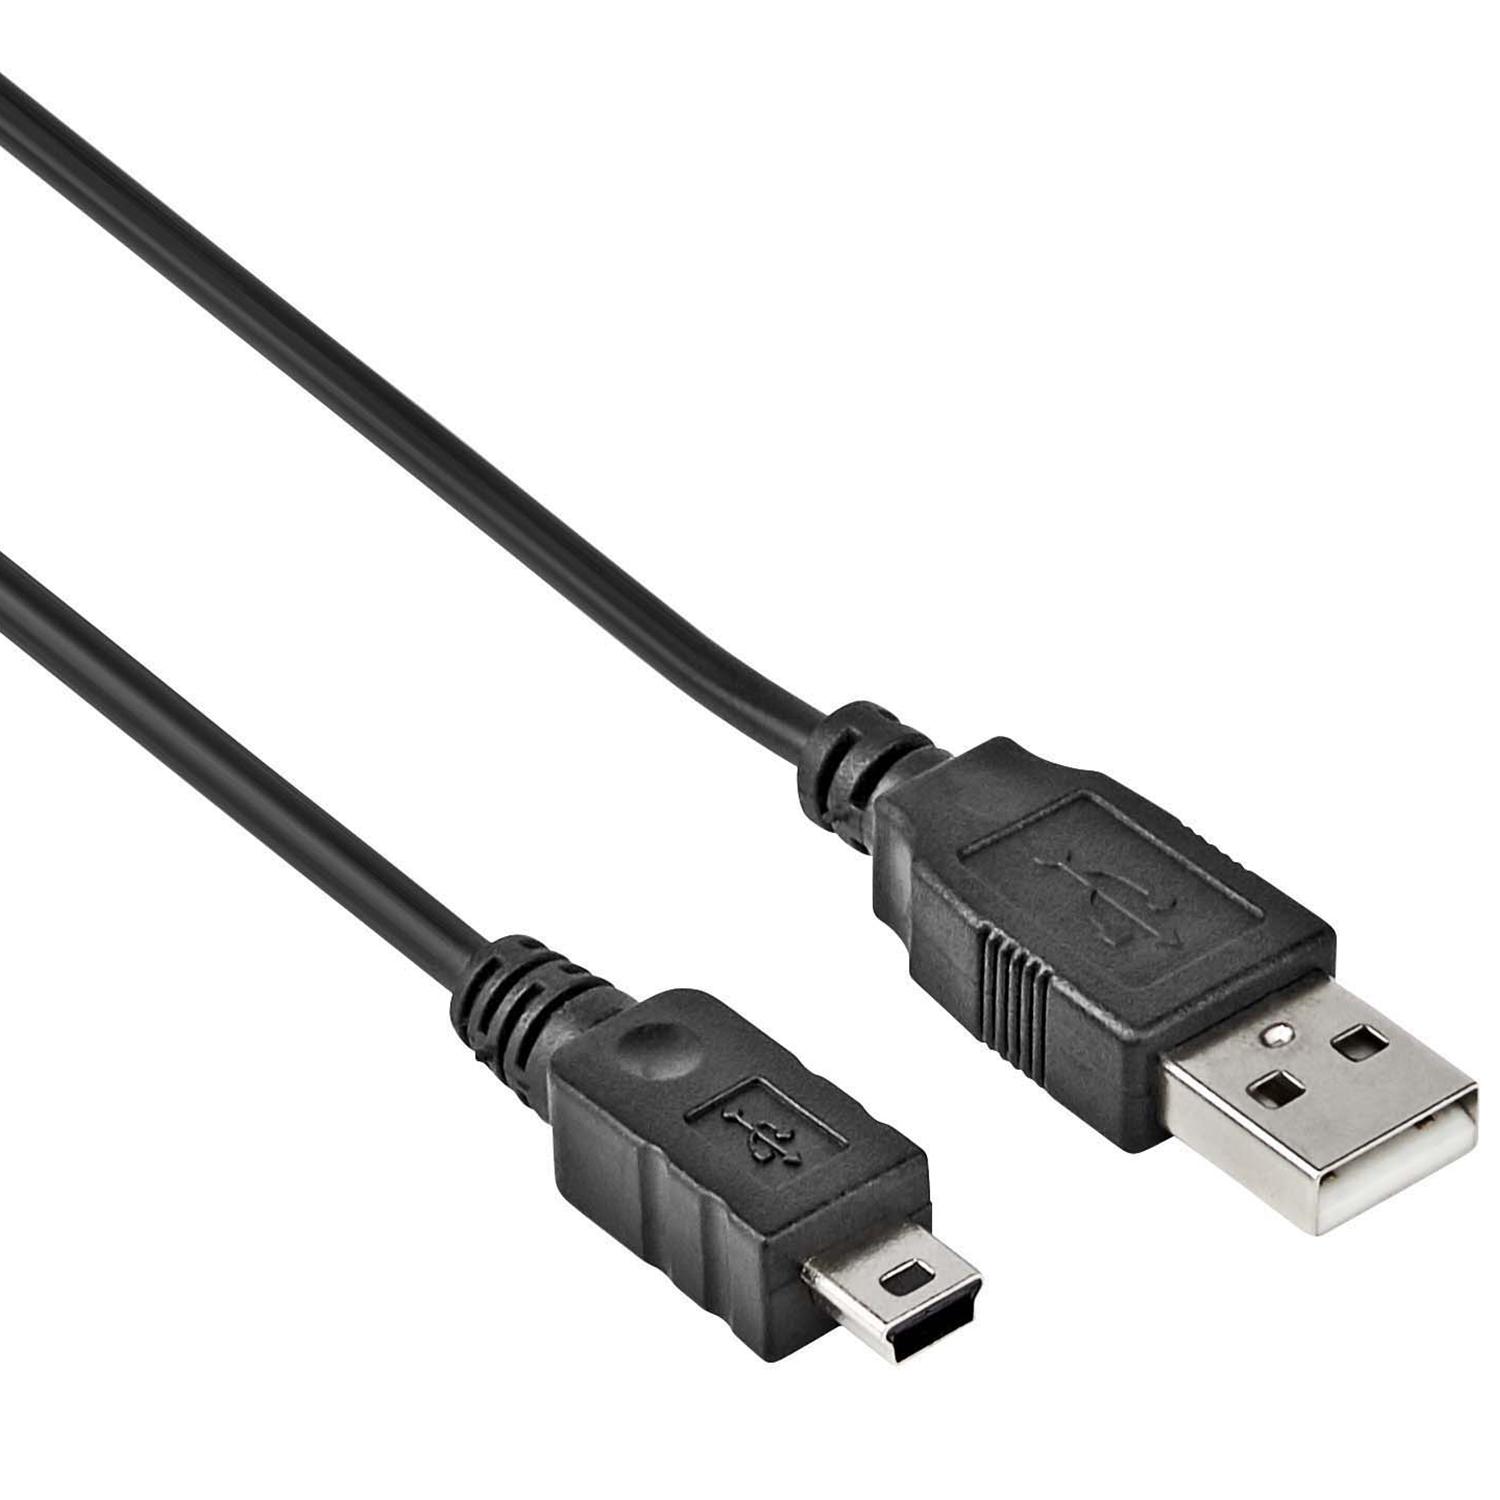 USB Mini datakabel - 1.5 meter - Allteq